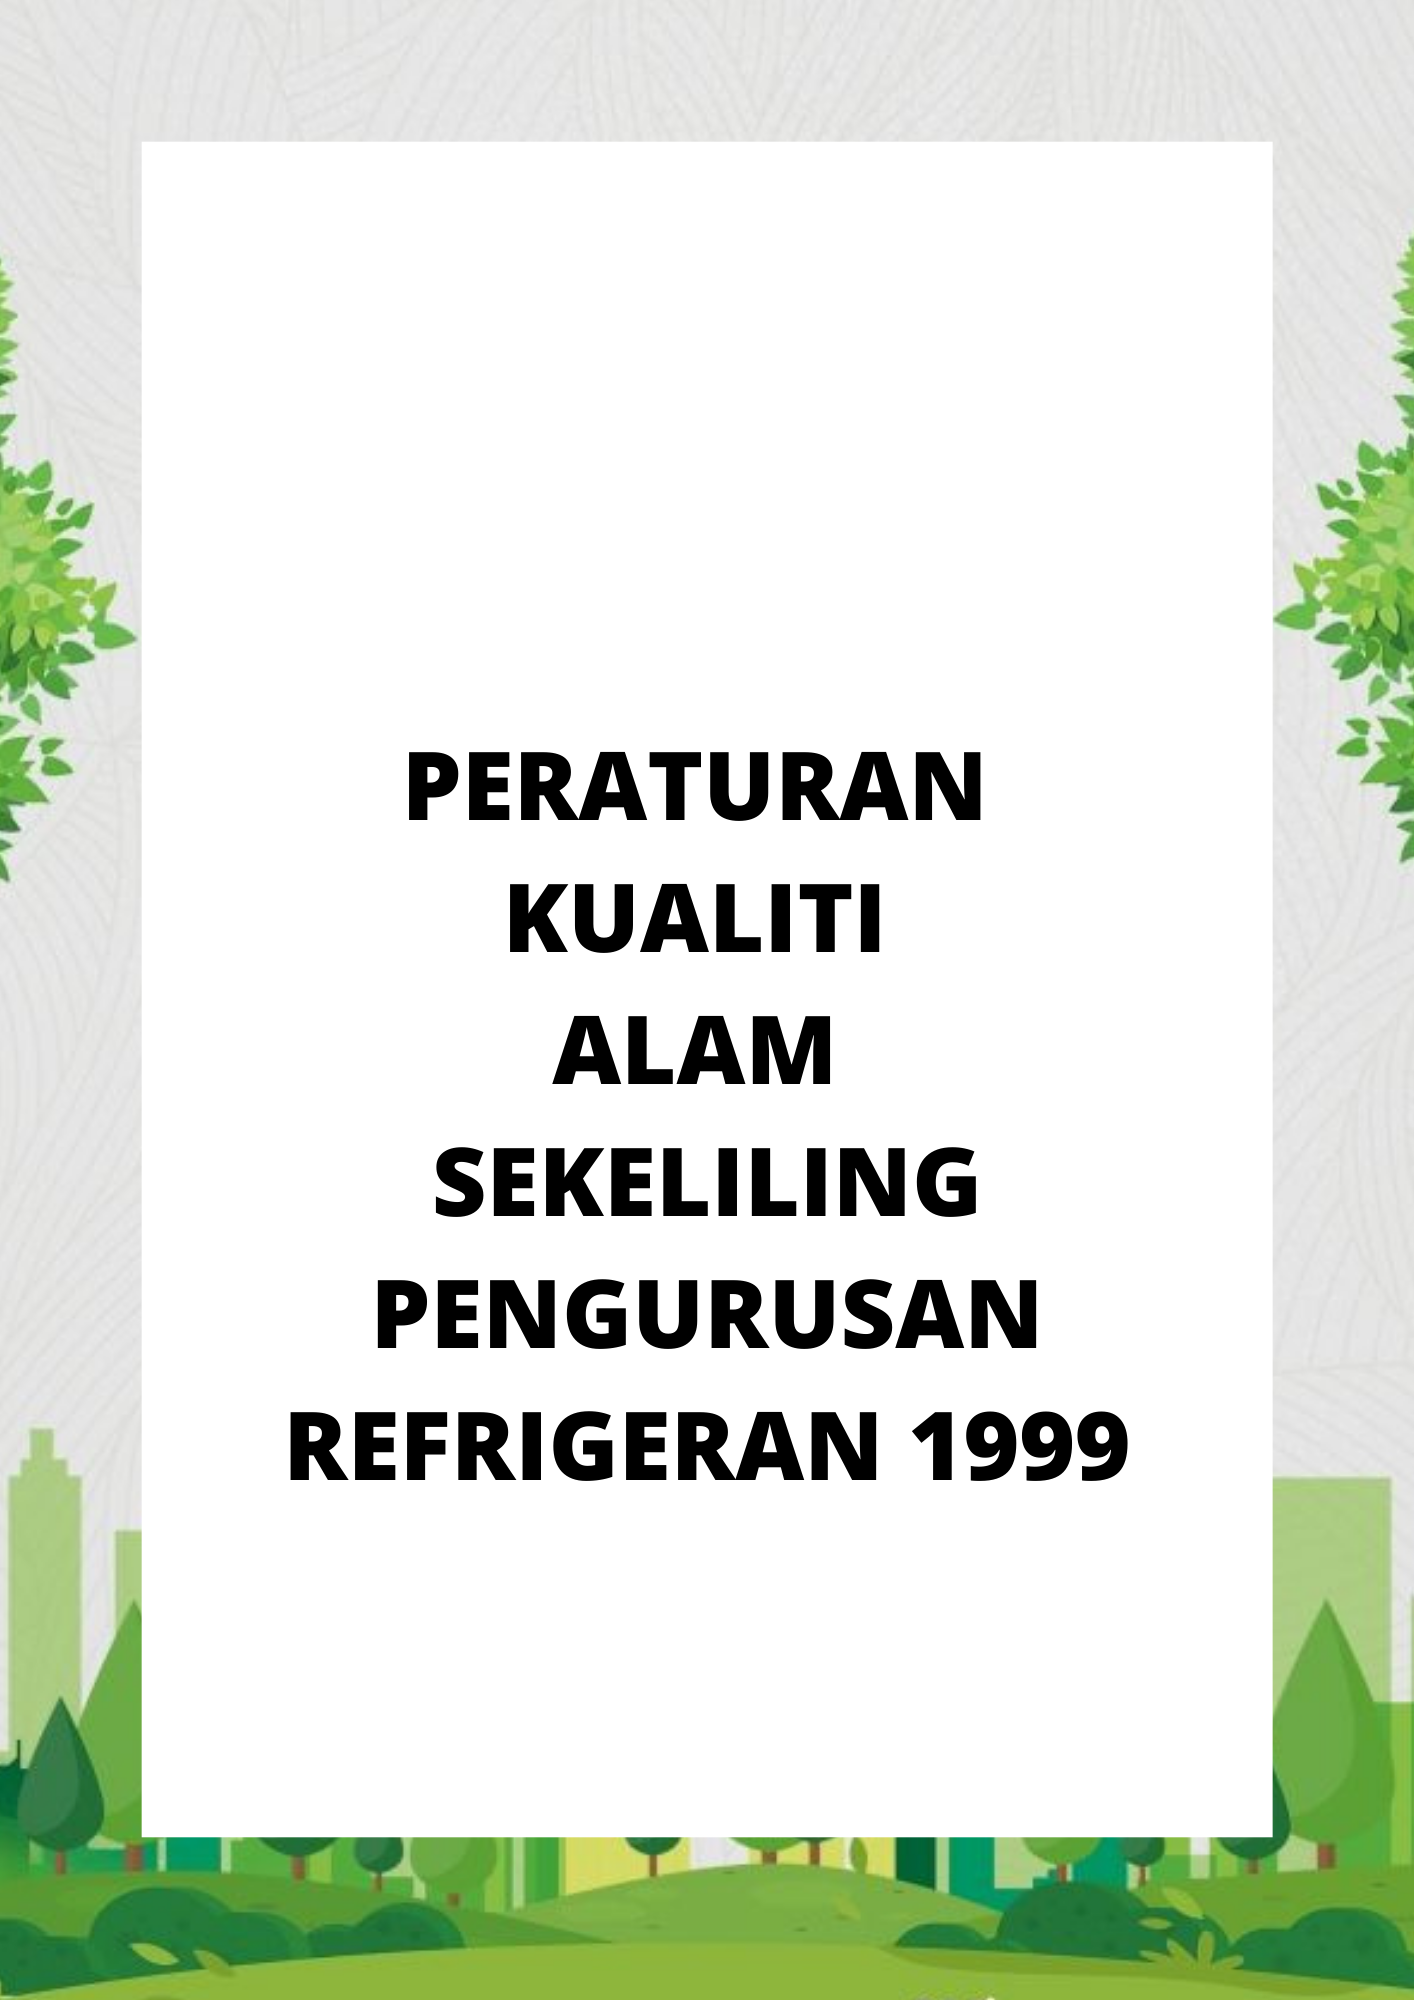 Peraturan Kualiti Alam Sekeliling Pengurusan Refrigeran 1999